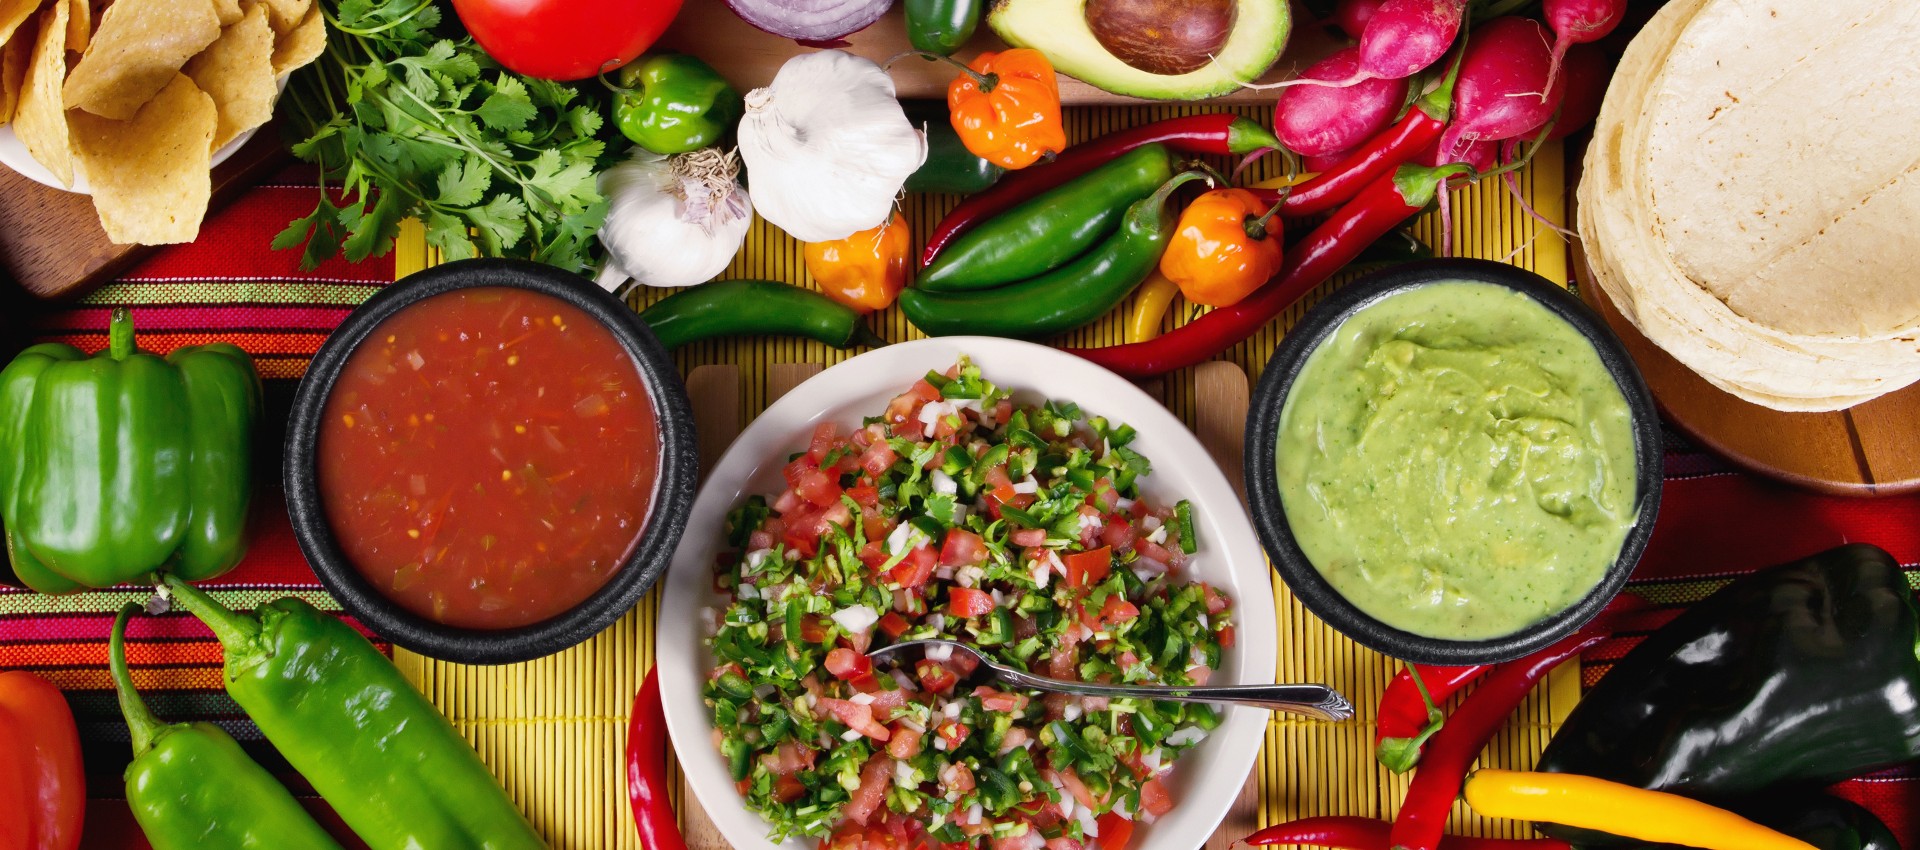 5 Mexican Food Recipe Videos Image